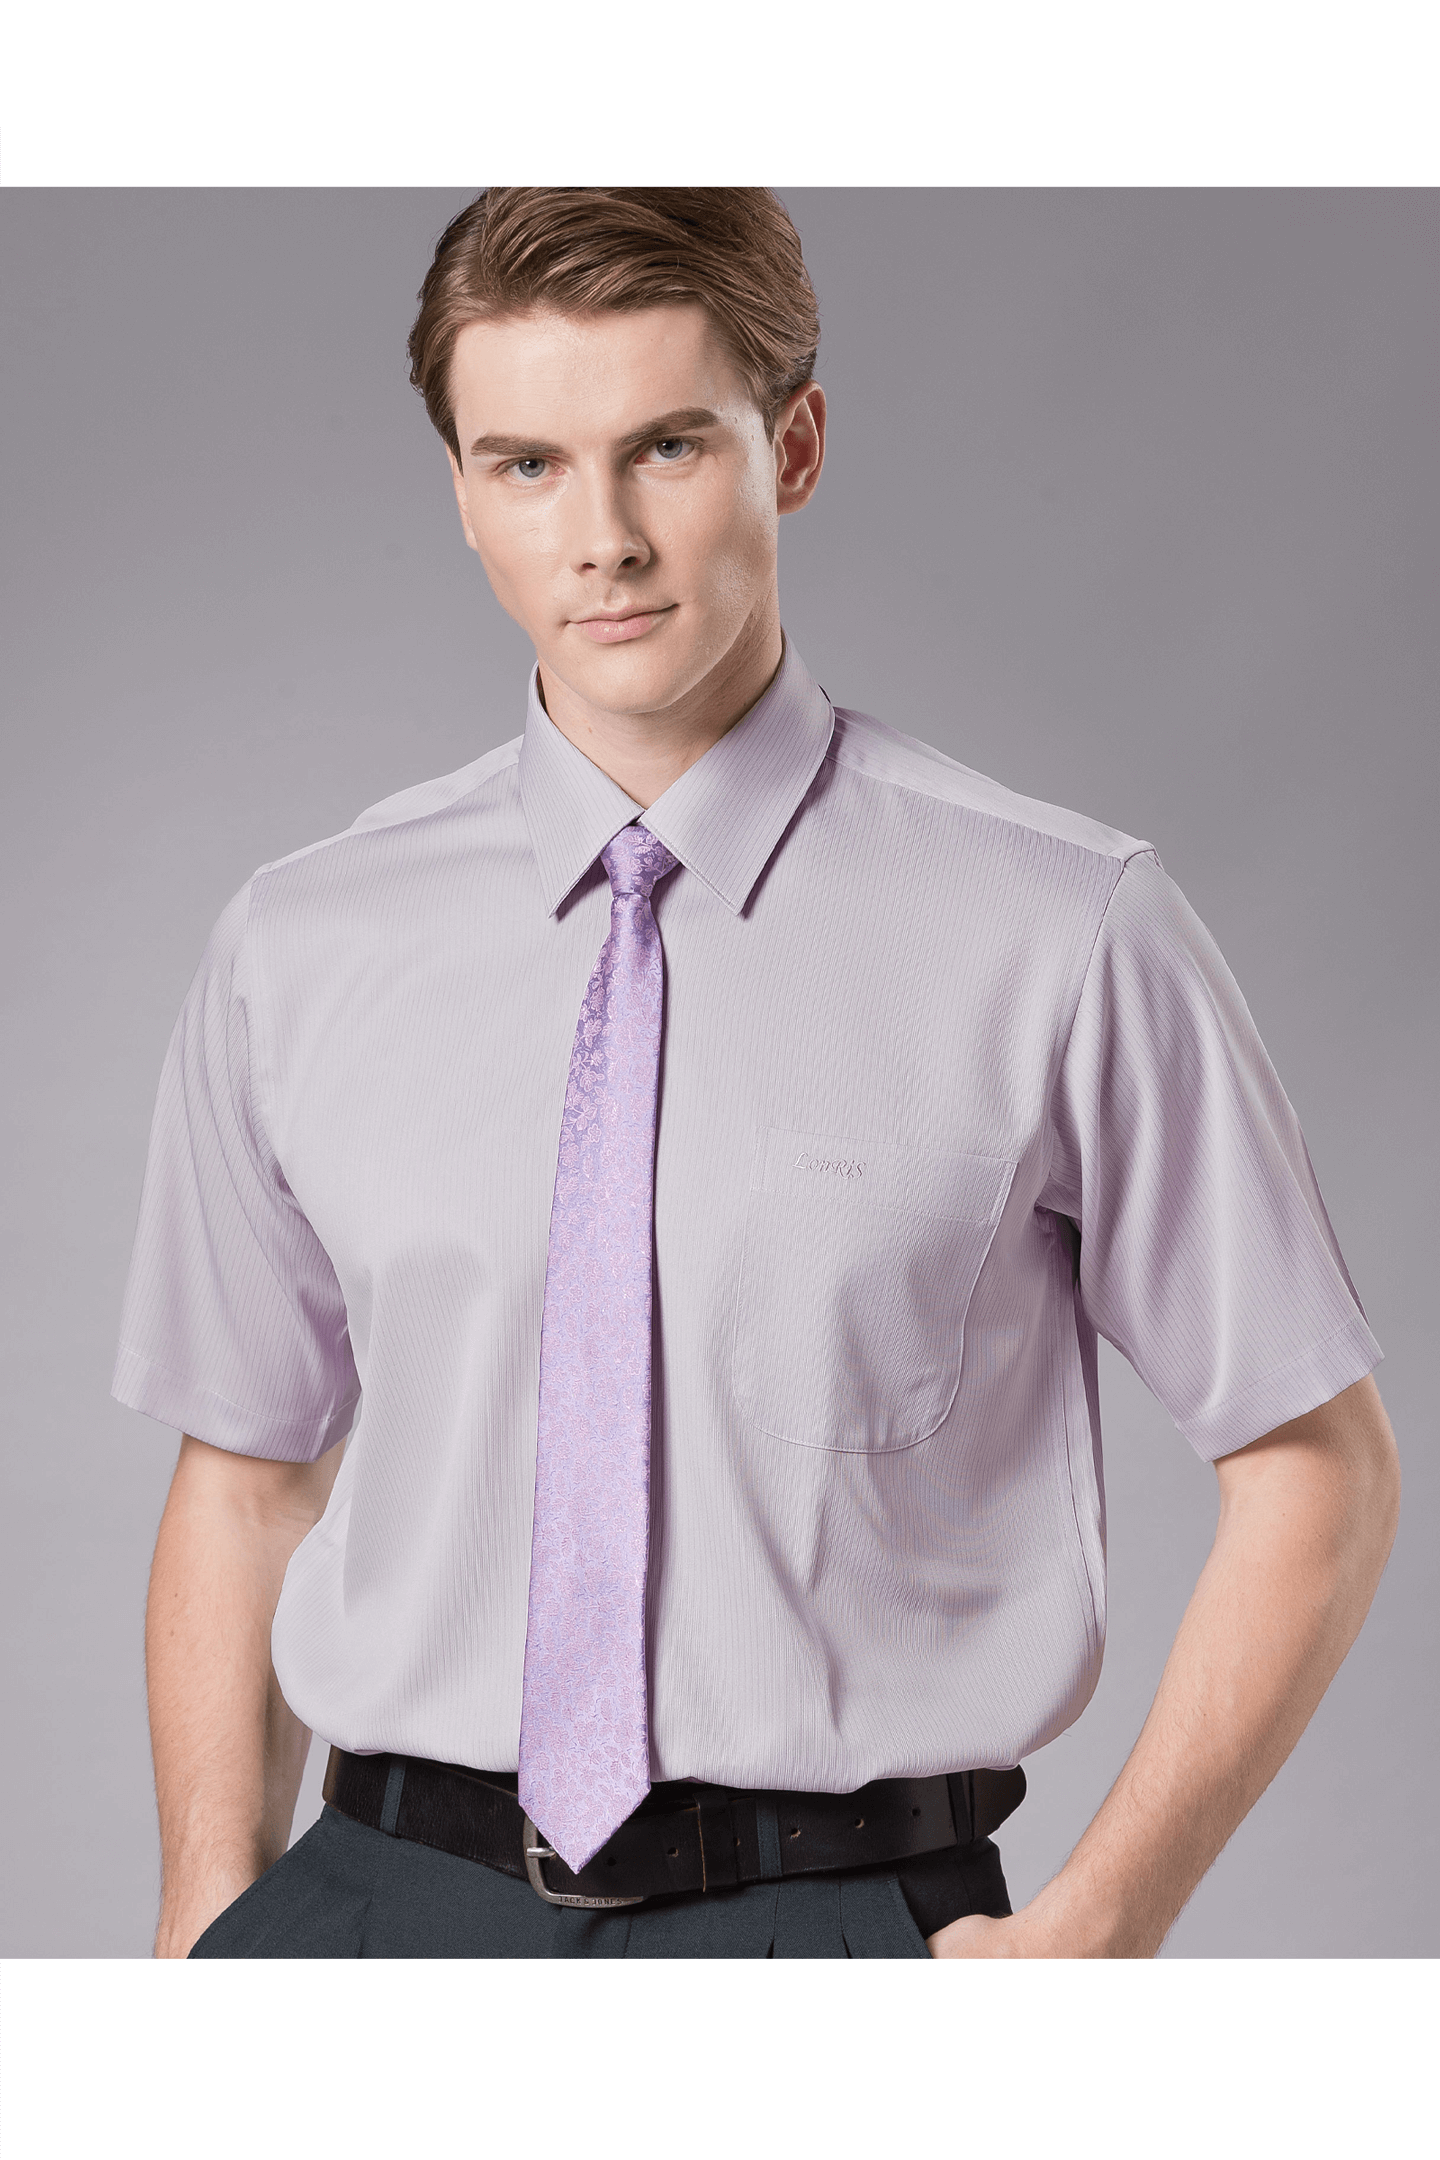 芋紫色緹花短袖襯衫/抗皺 吸濕排汗